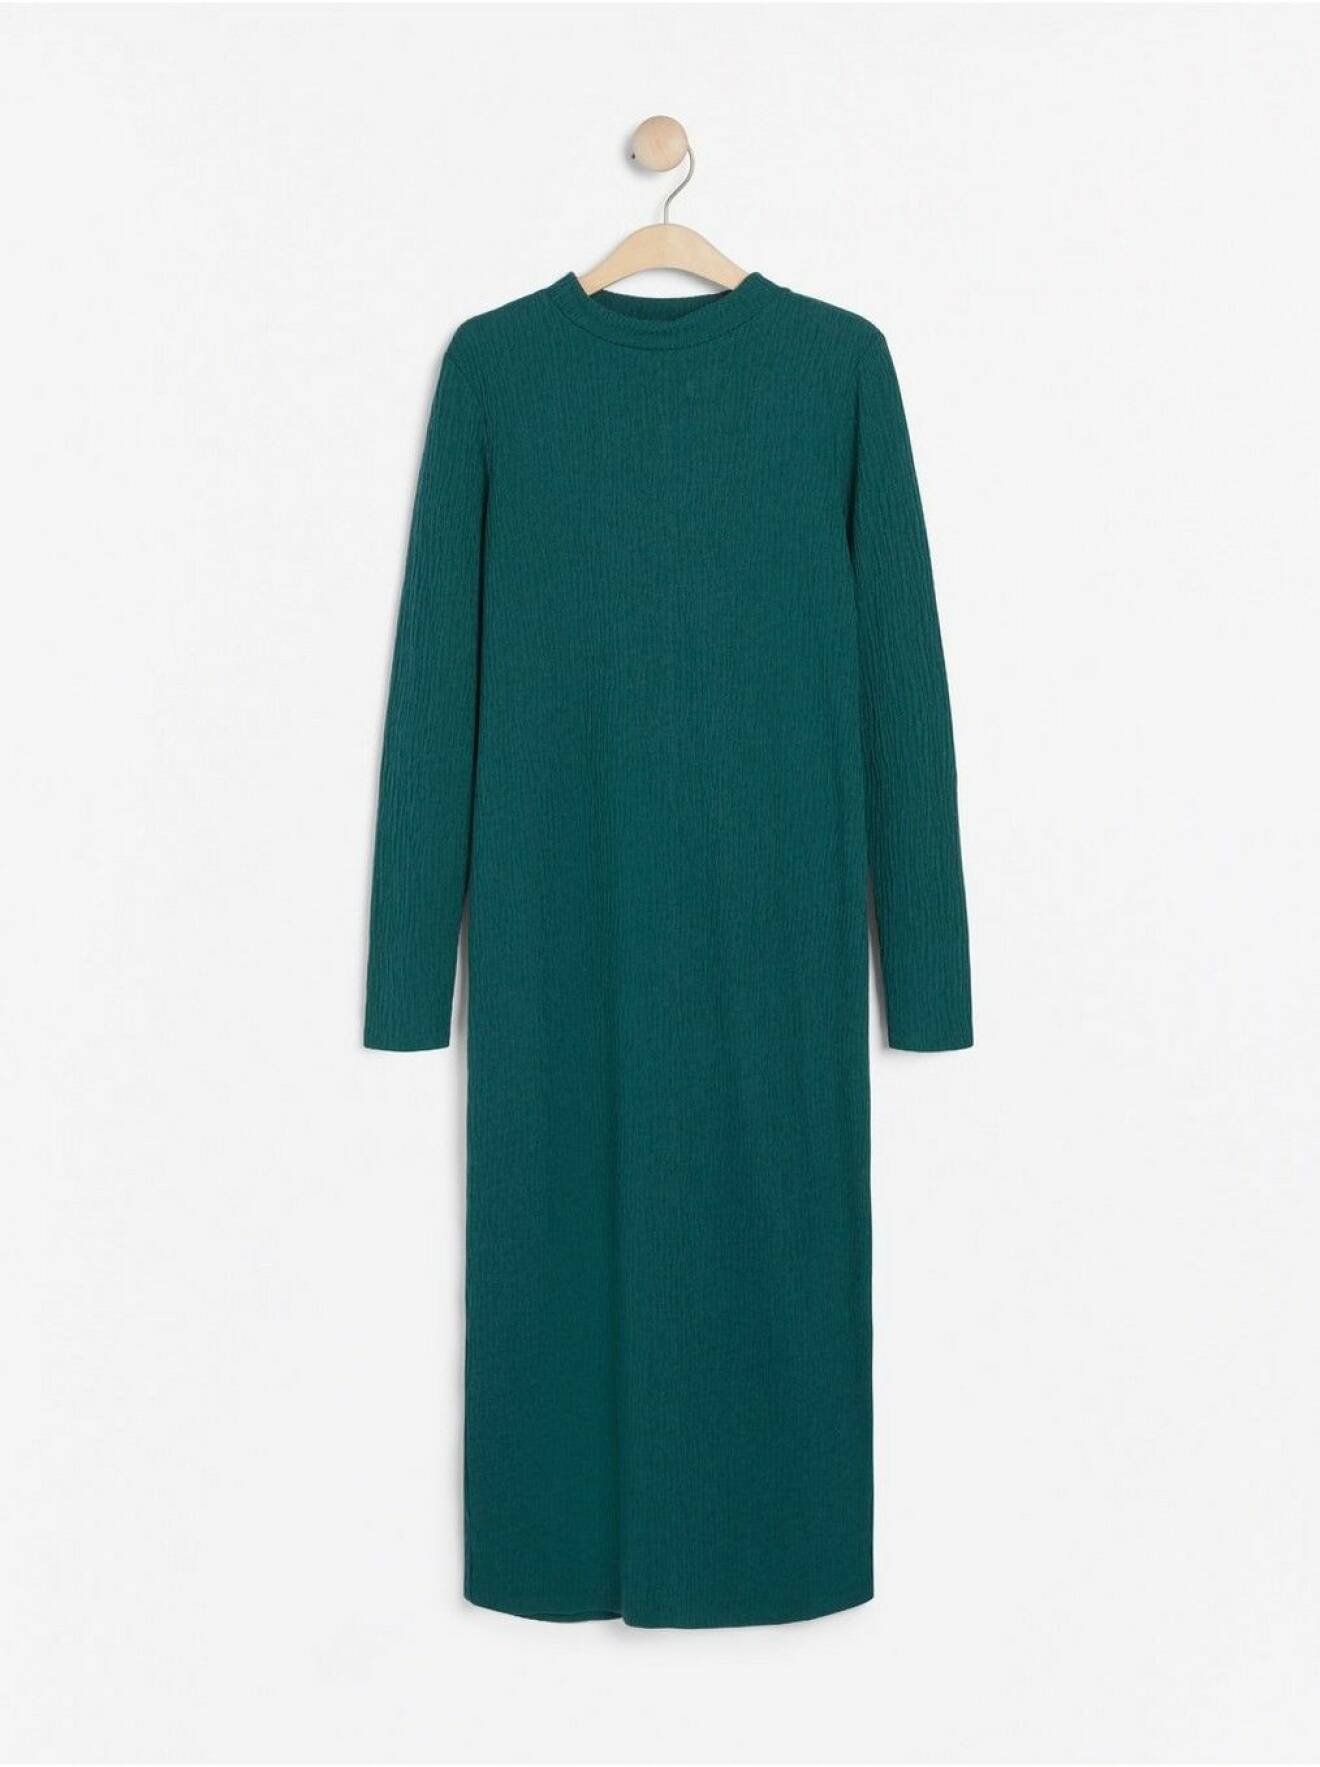 Grön klänning från Lindex